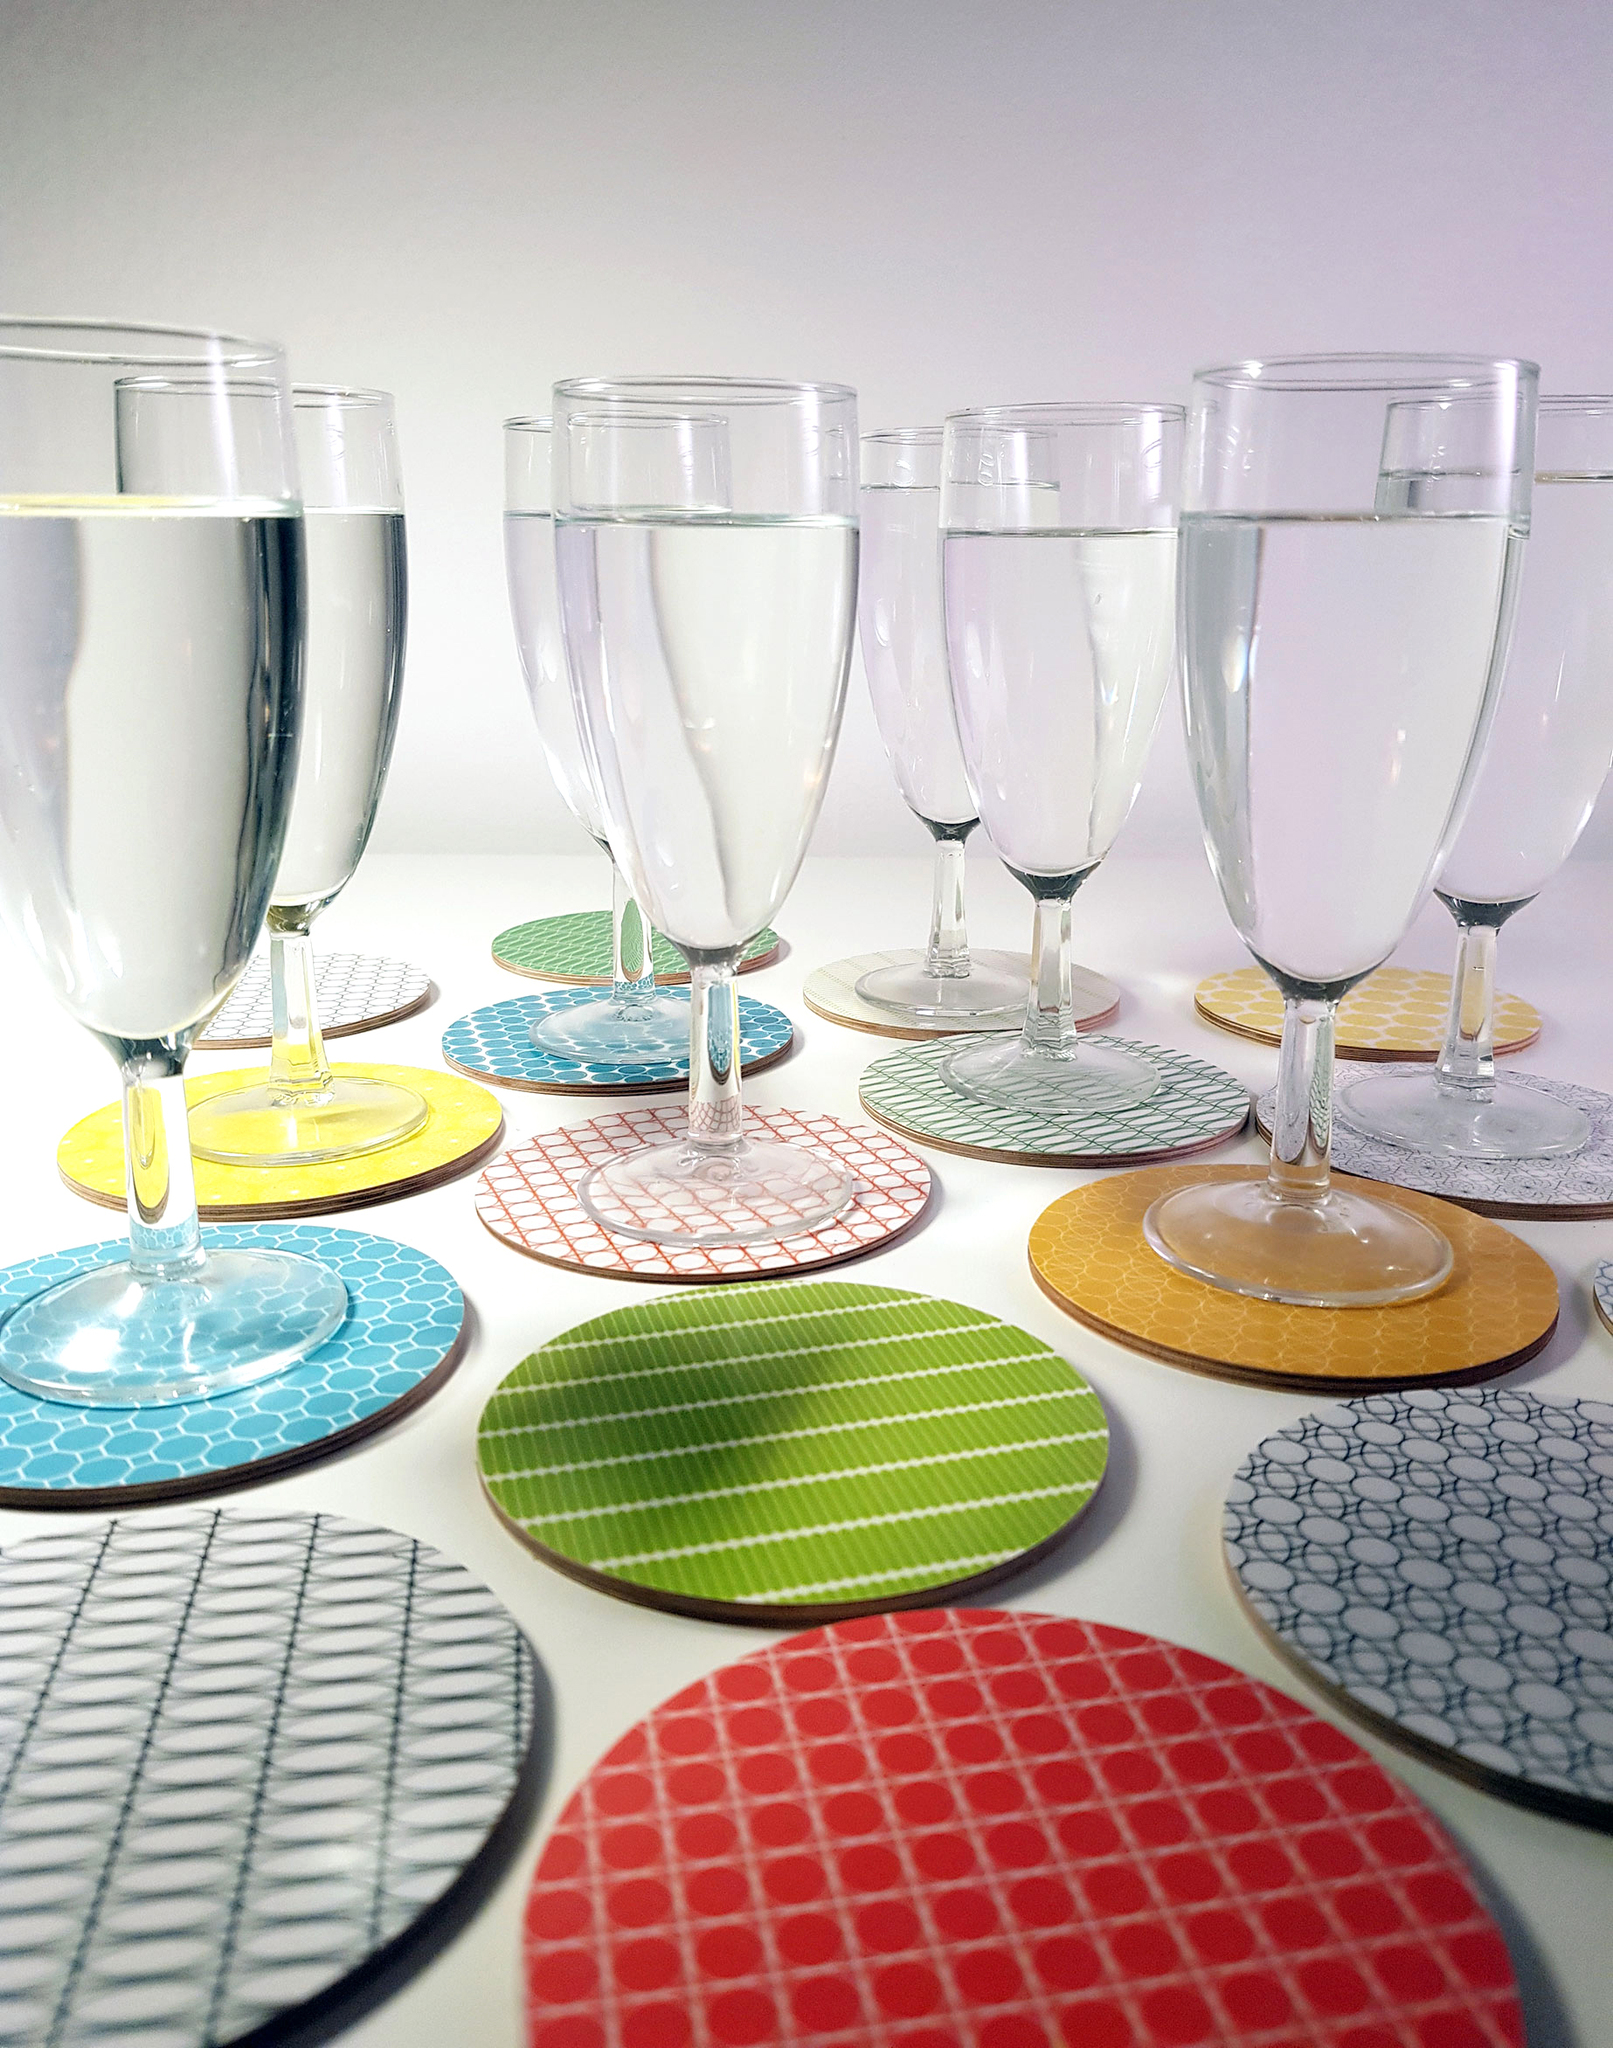 Glasunderlägg med olika mönster och färger, en färg för varje familjemedlem och gäst.